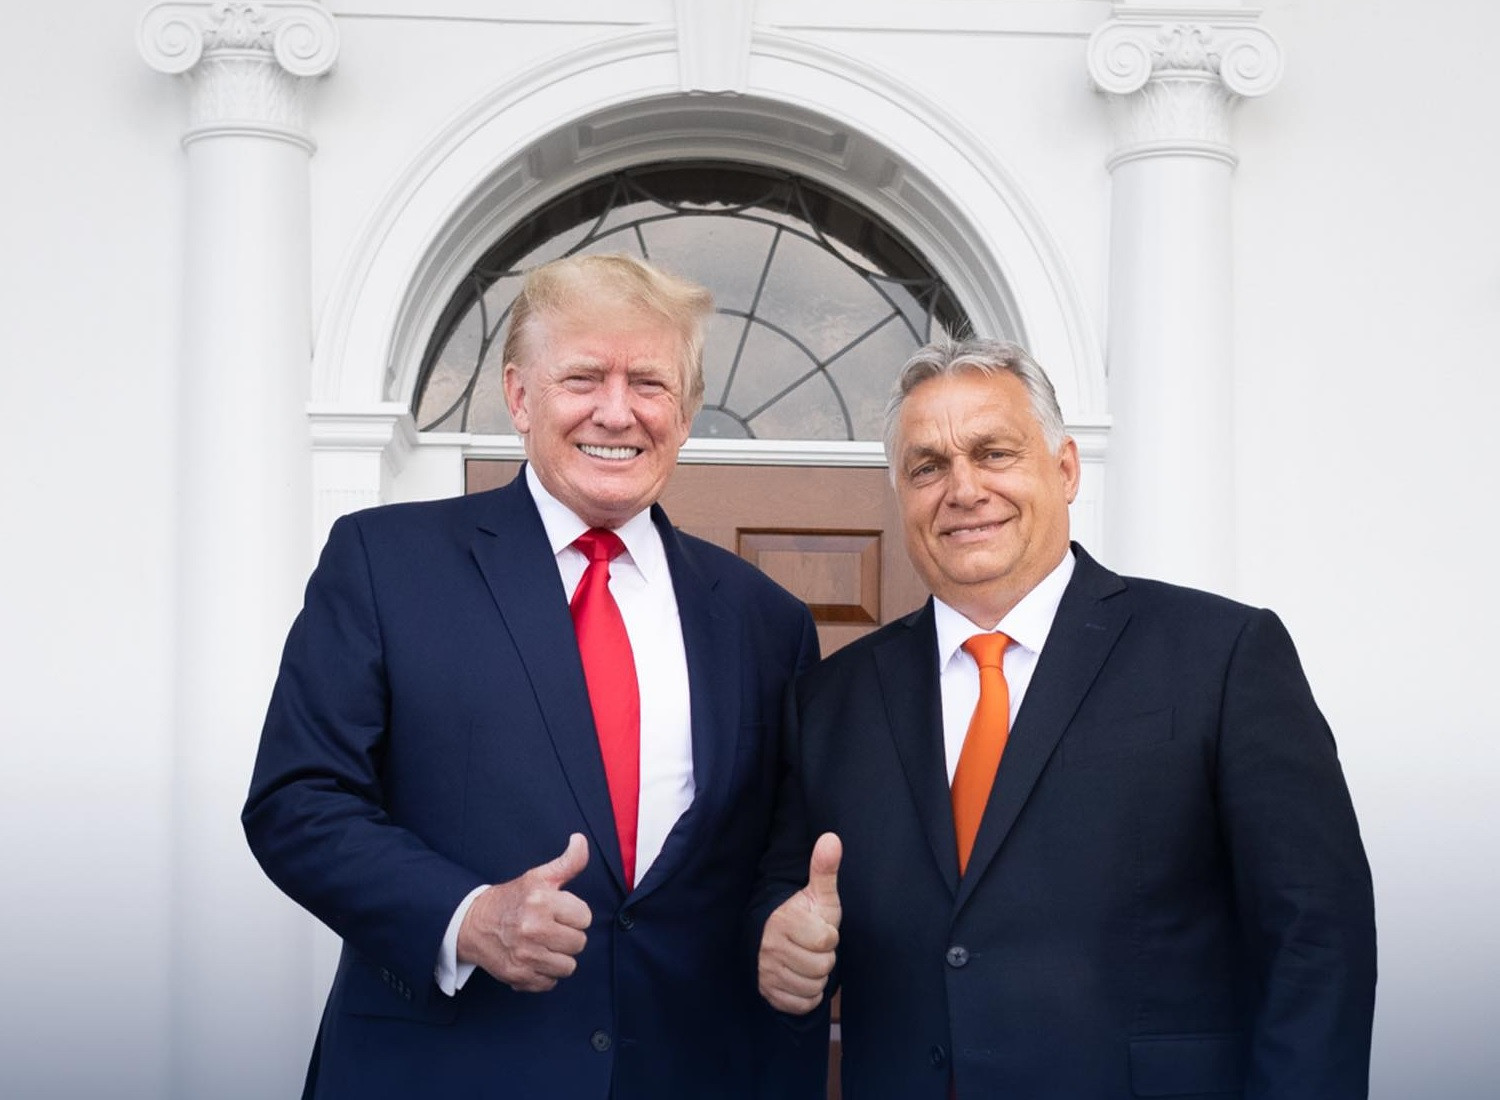 Orbán Trumppal találkozik a republikánus elnökesélyes floridai birtokán